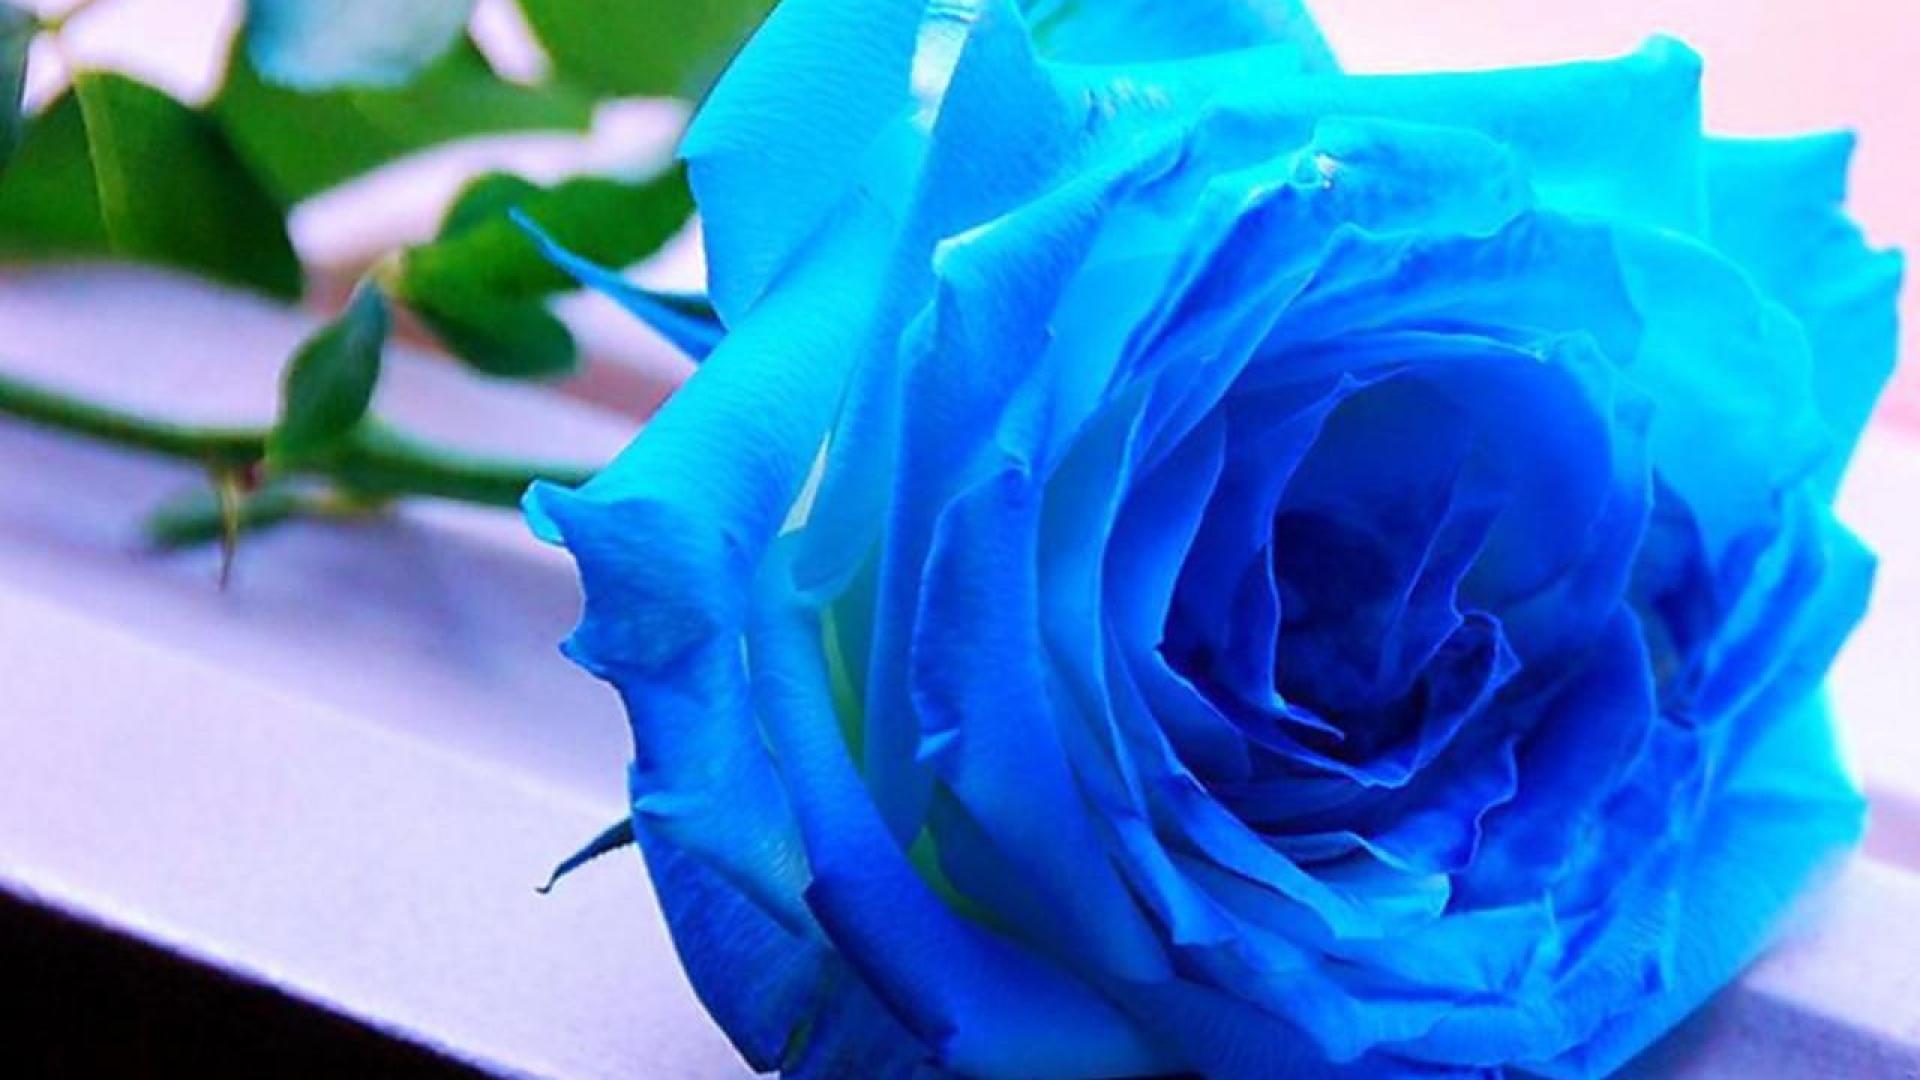 meilleur fond d'écran rose,fleur,rose,bleu,plante à fleurs,rose bleue